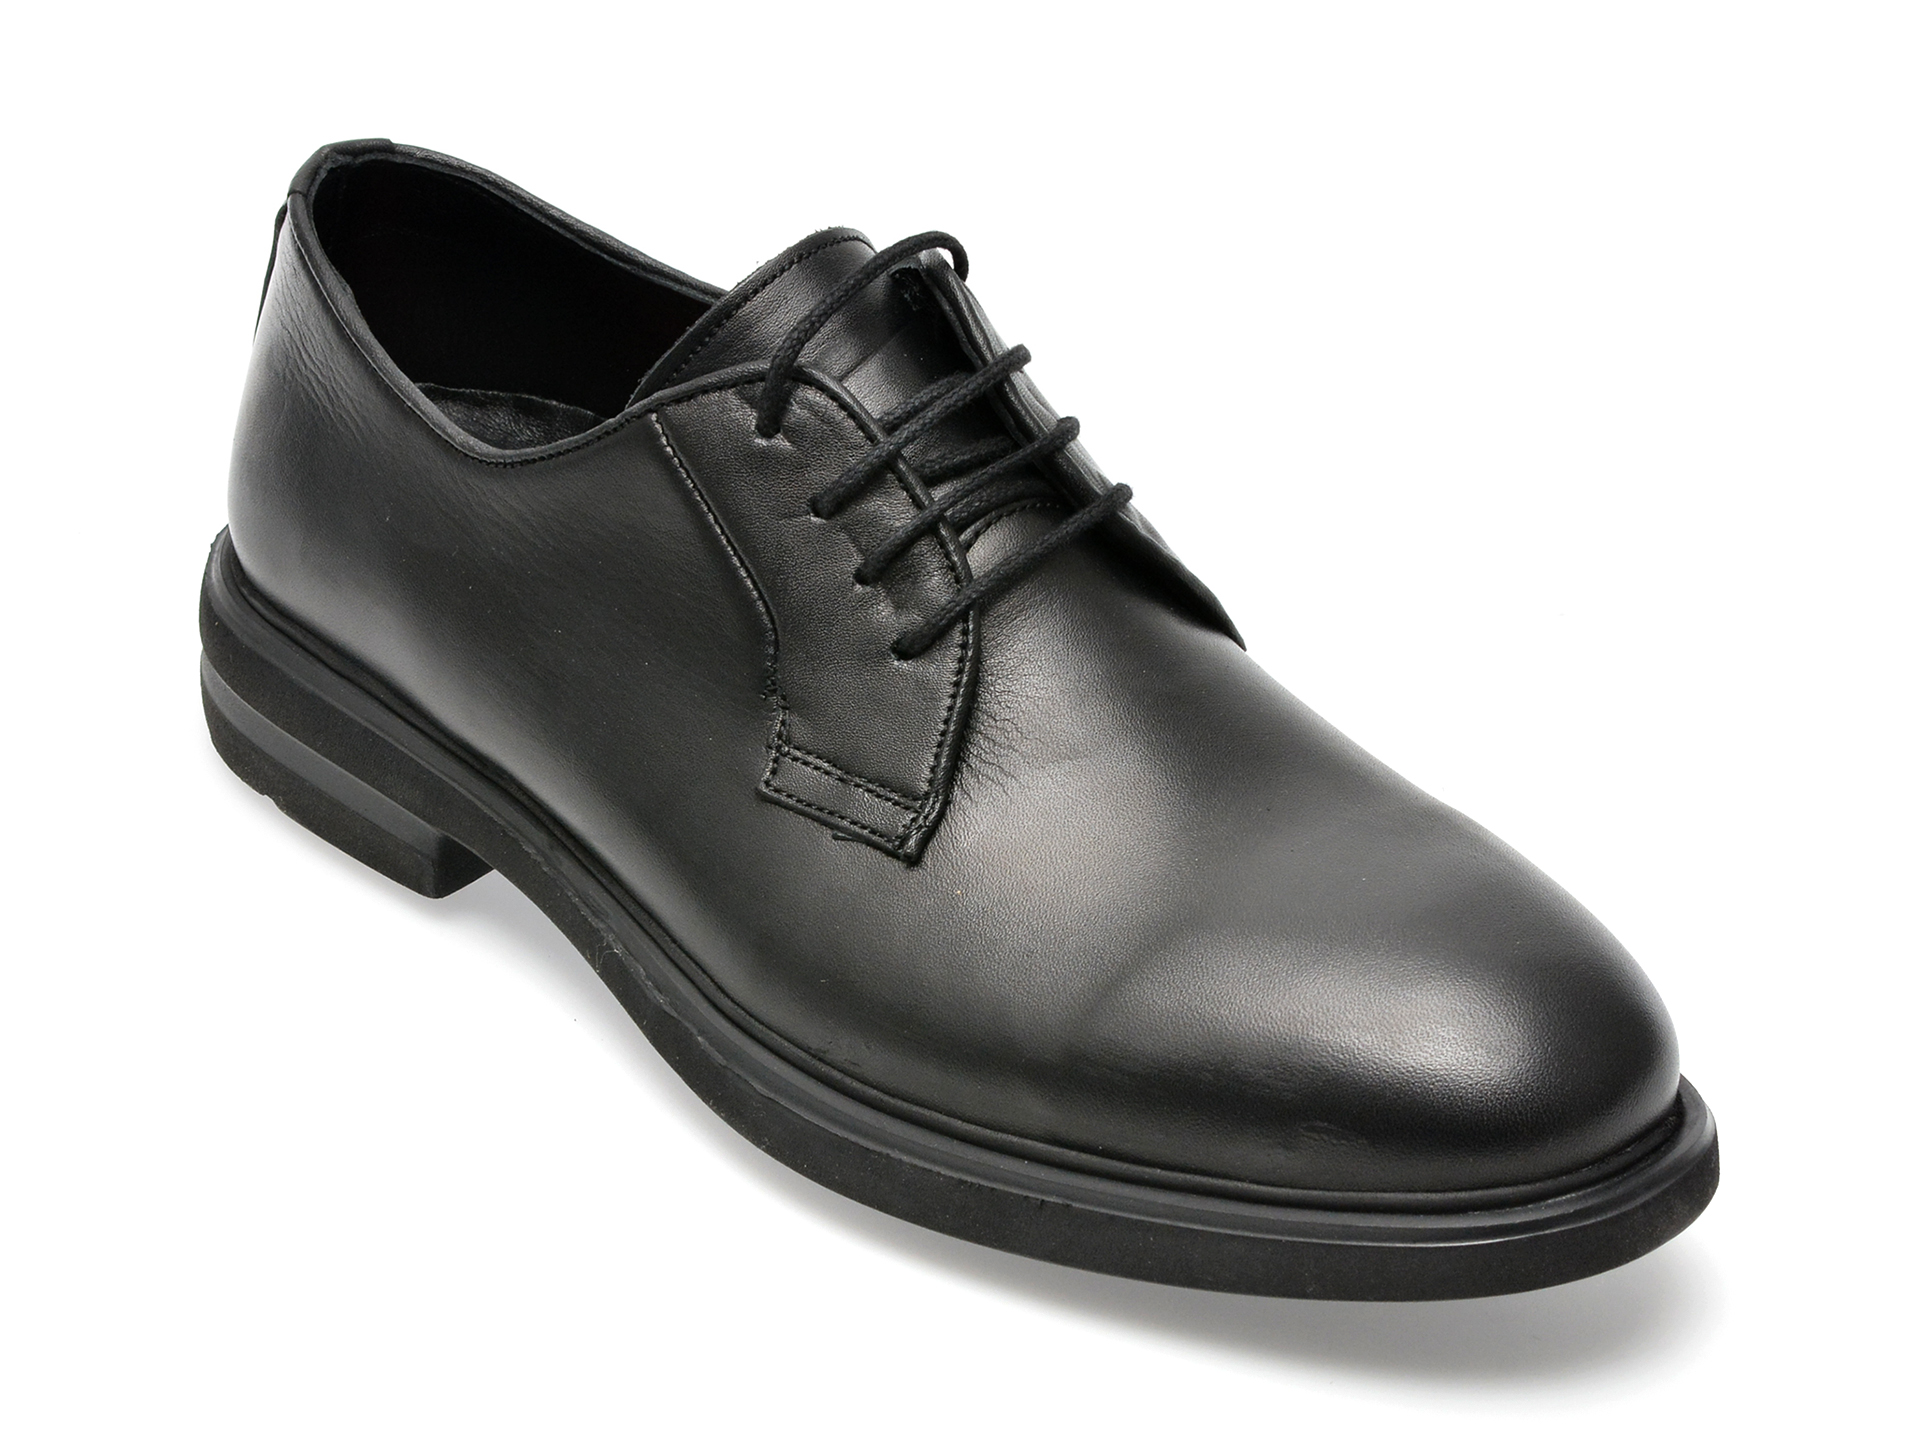 Pantofi OTTER negri, E1801, din piele naturala barbati 2023-09-21